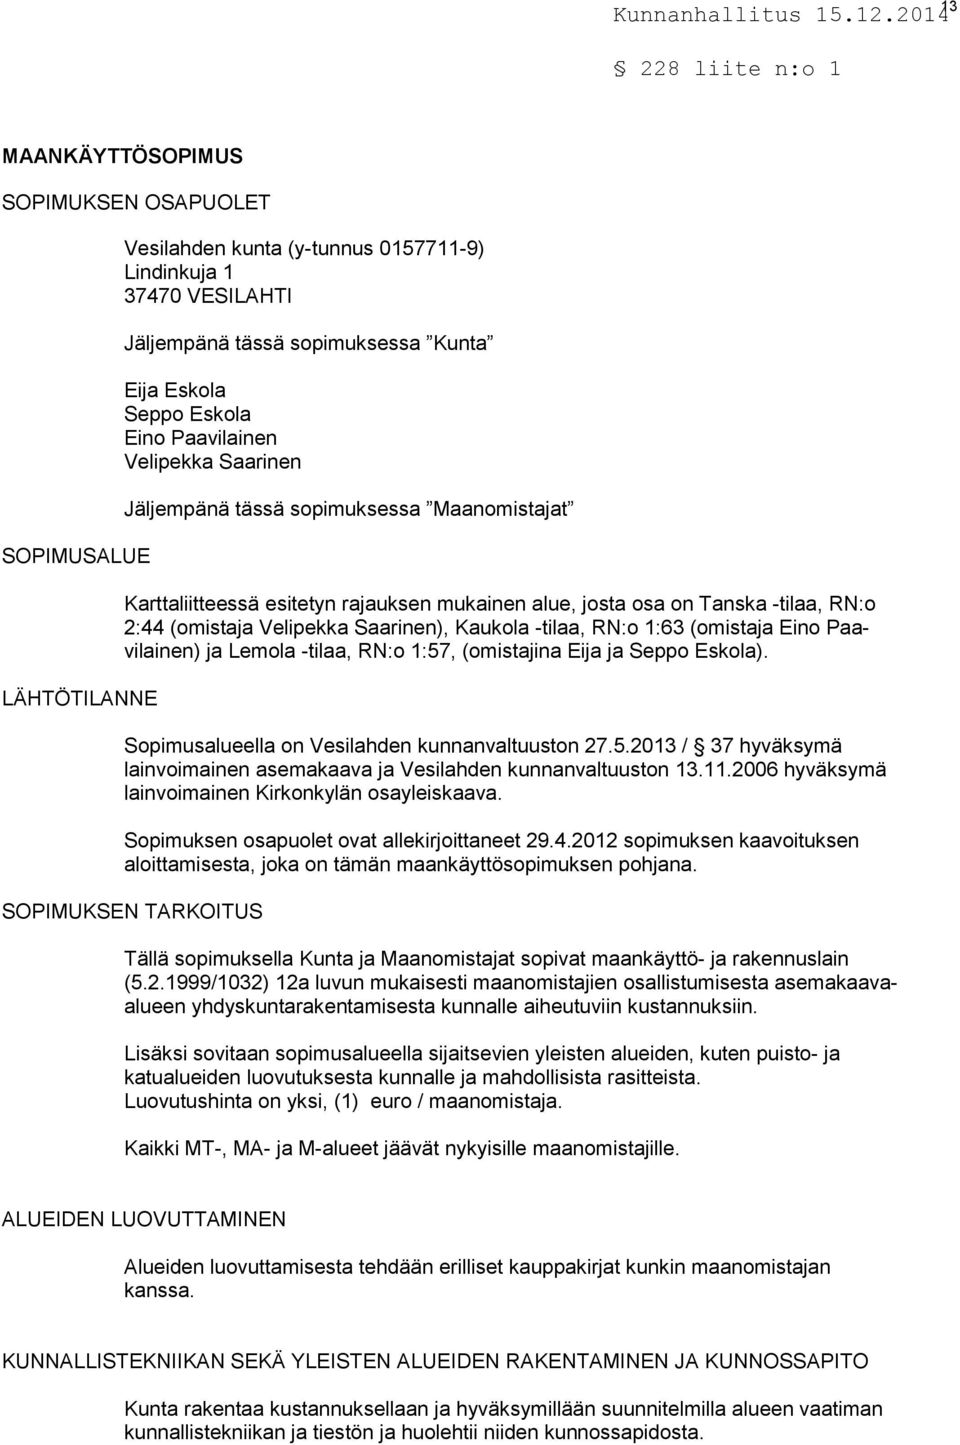 Kaukola -tilaa, RN:o 1:63 (omistaja Eino Paavilainen) ja Lemola -tilaa, RN:o 1:57, (omistajina Eija ja Seppo Eskola). Sopimusalueella on Vesilahden kunnanvaltuuston 27.5.2013 / 37 hyväksymä lainvoimainen asemakaava ja Vesilahden kunnanvaltuuston 13.